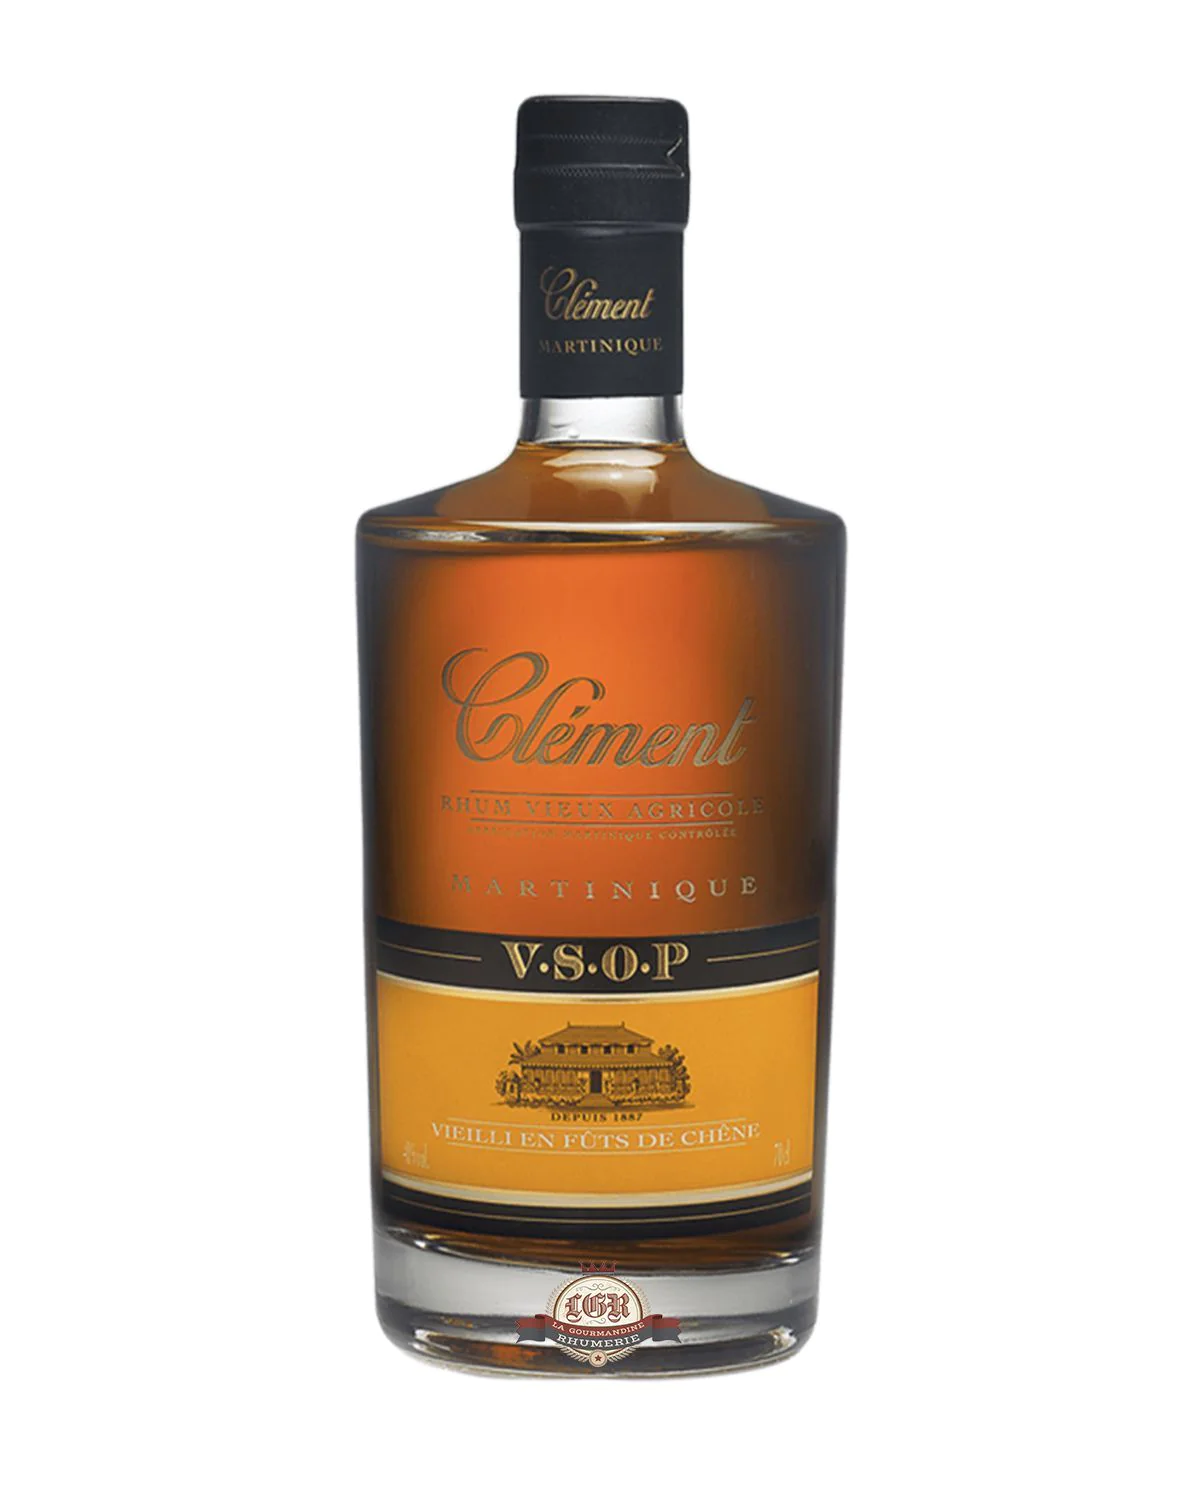 Clement VSOP Rum Martinique, France